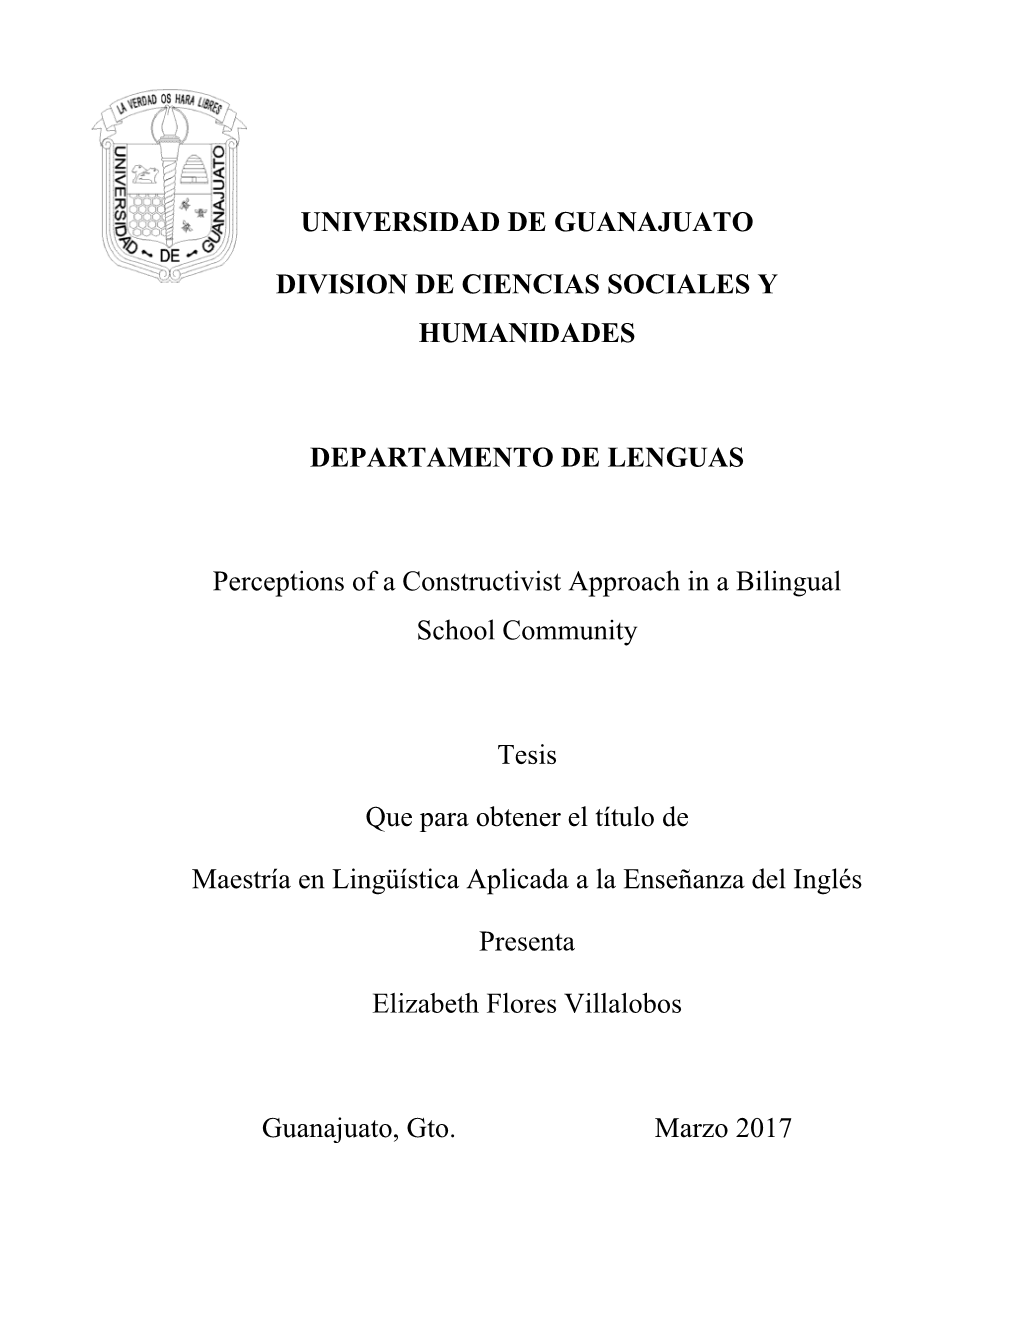 UNIVERSIDAD DE GUANAJUATO DIVISION DE CIENCIAS SOCIALES Y HUMANIDADES DEPARTAMENTO DE LENGUAS Perceptions of a Constructivist A